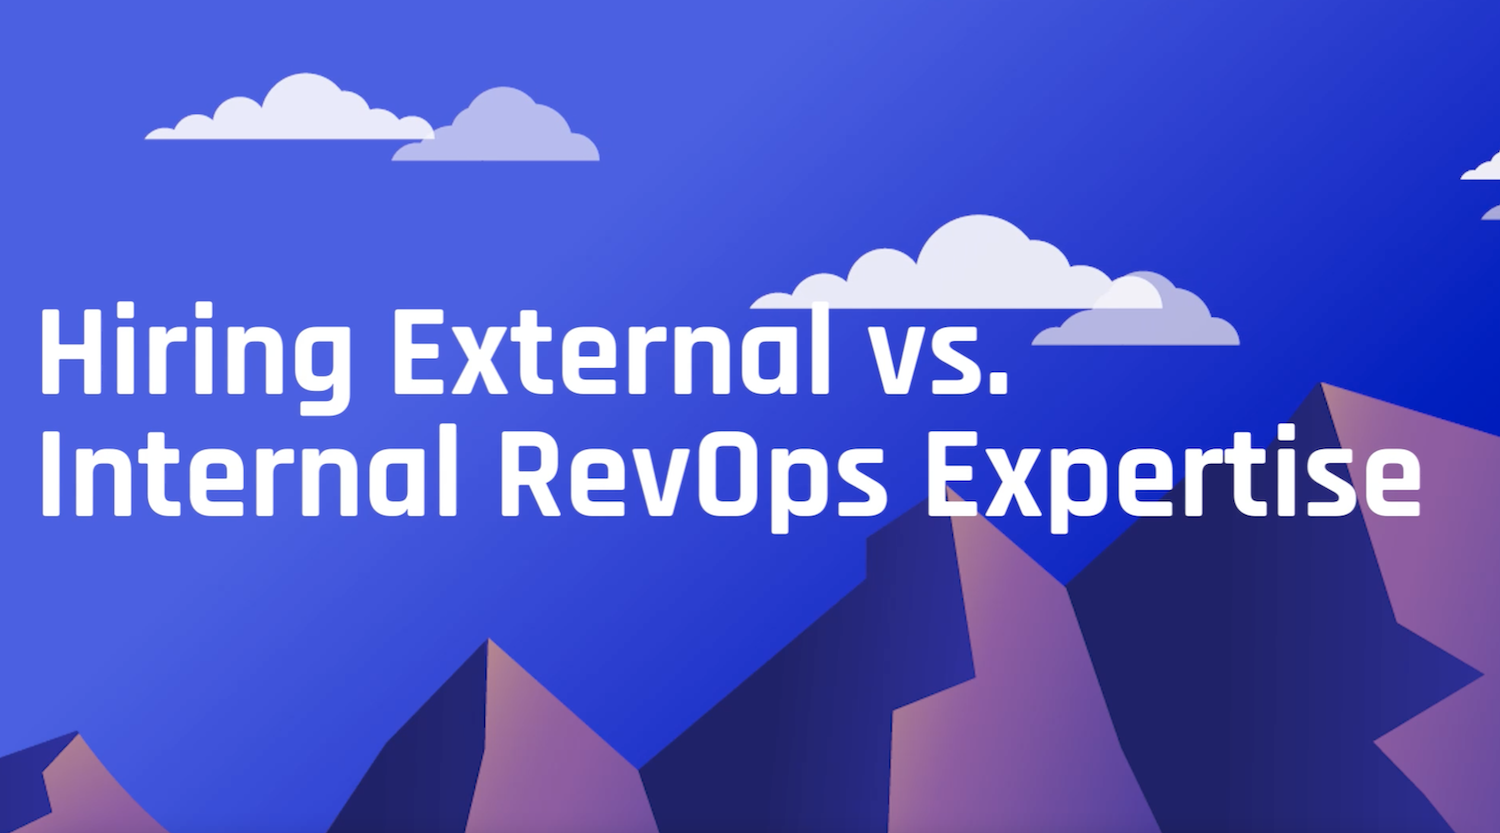 Hiring Internal vs. External RevOps